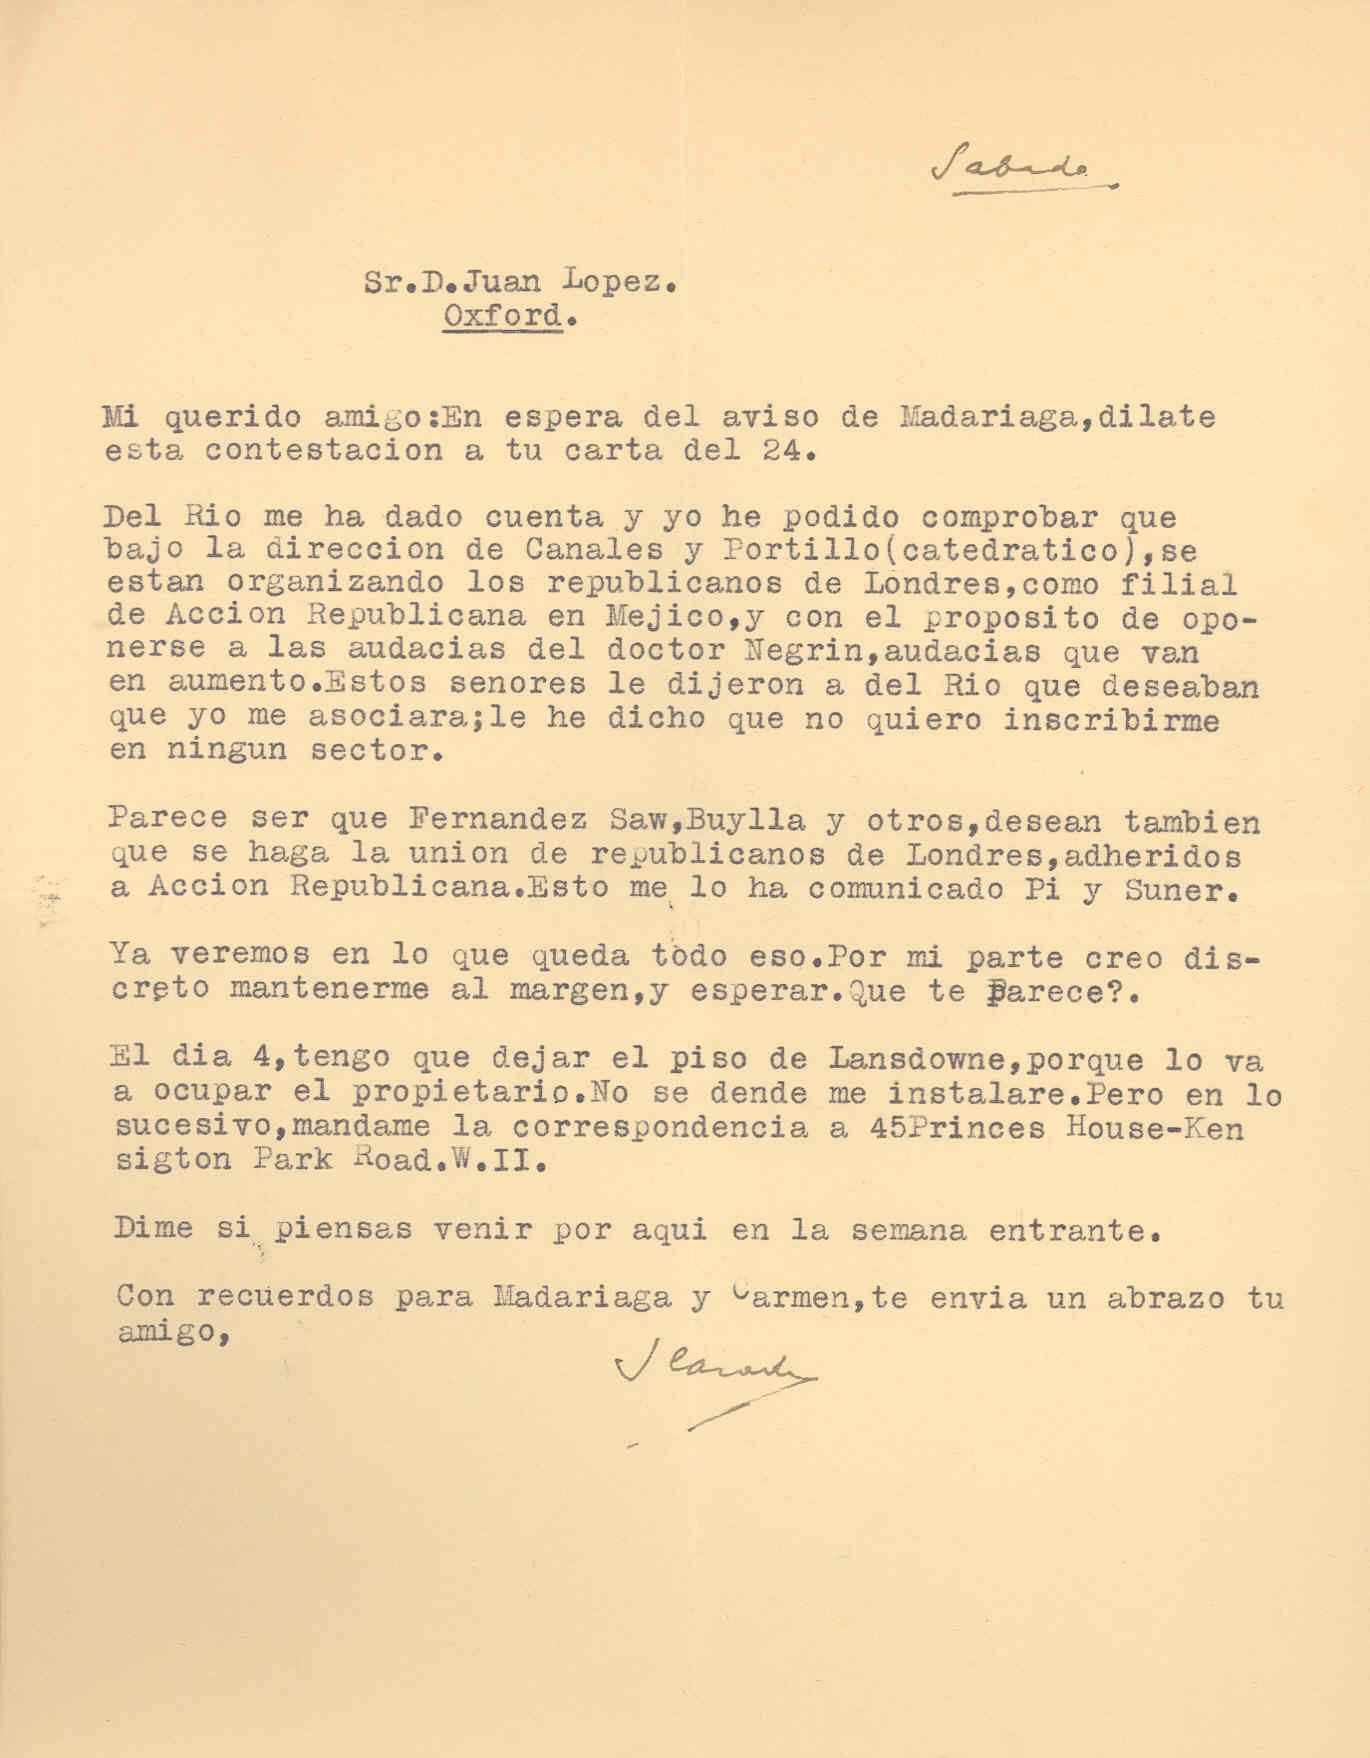 Carta de Segismundo Casado en la que habla de la organización de los republicanos en Londres adheriéndose a Acción Republicana de México en contra de Negrín.